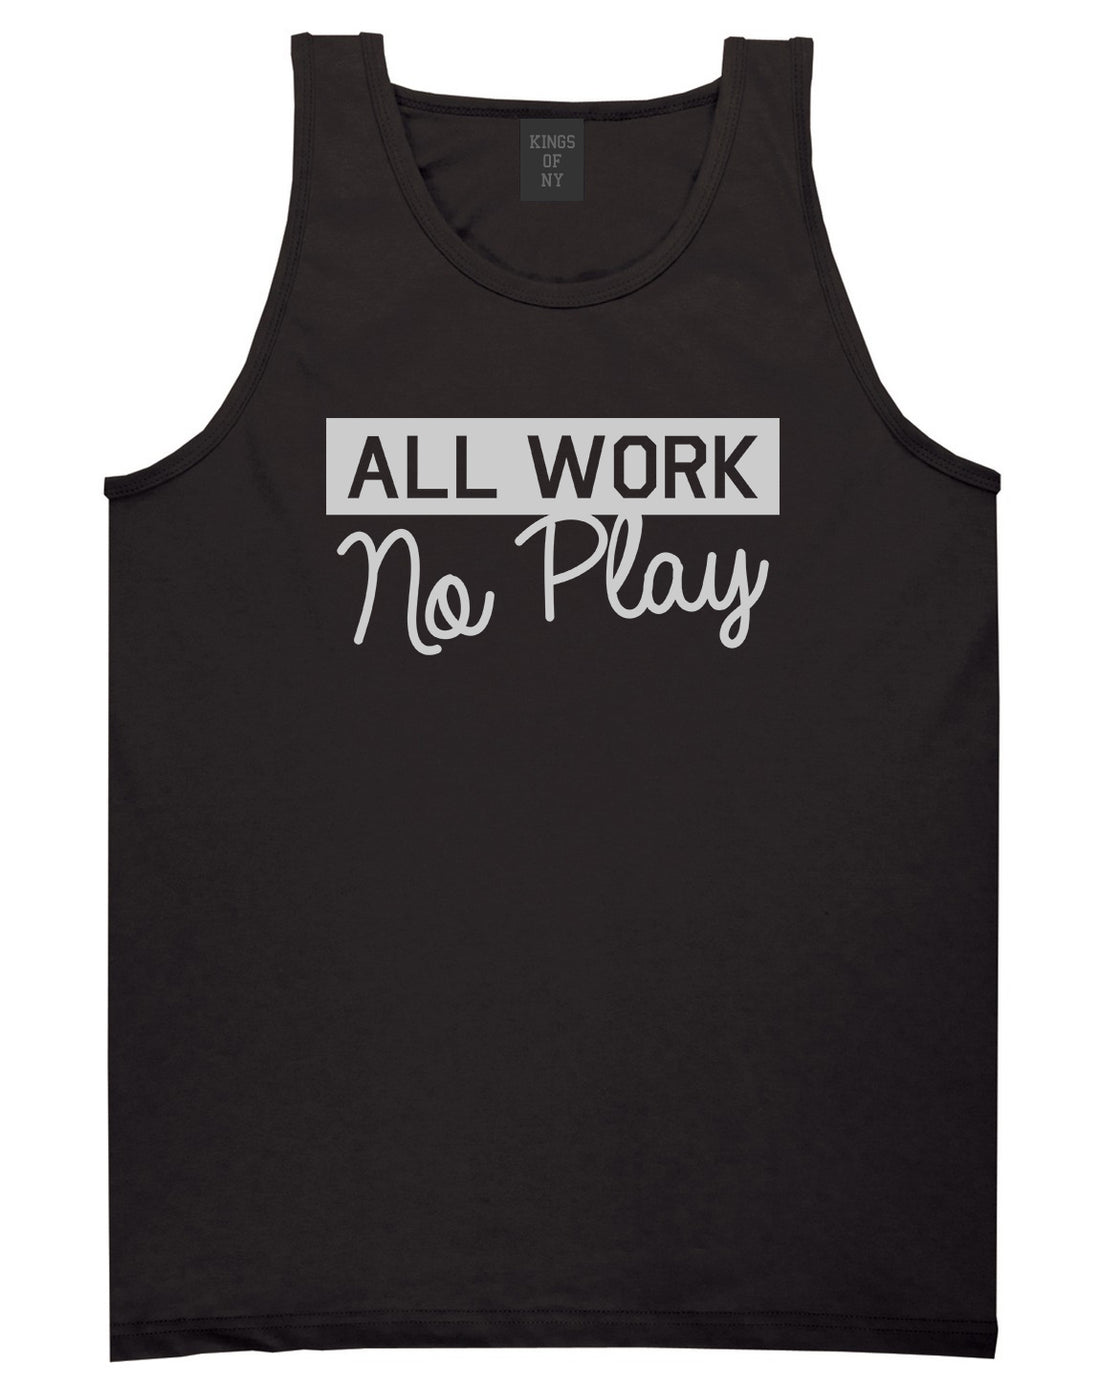 All Work No Play Mens Tank Top T-Shirt Black